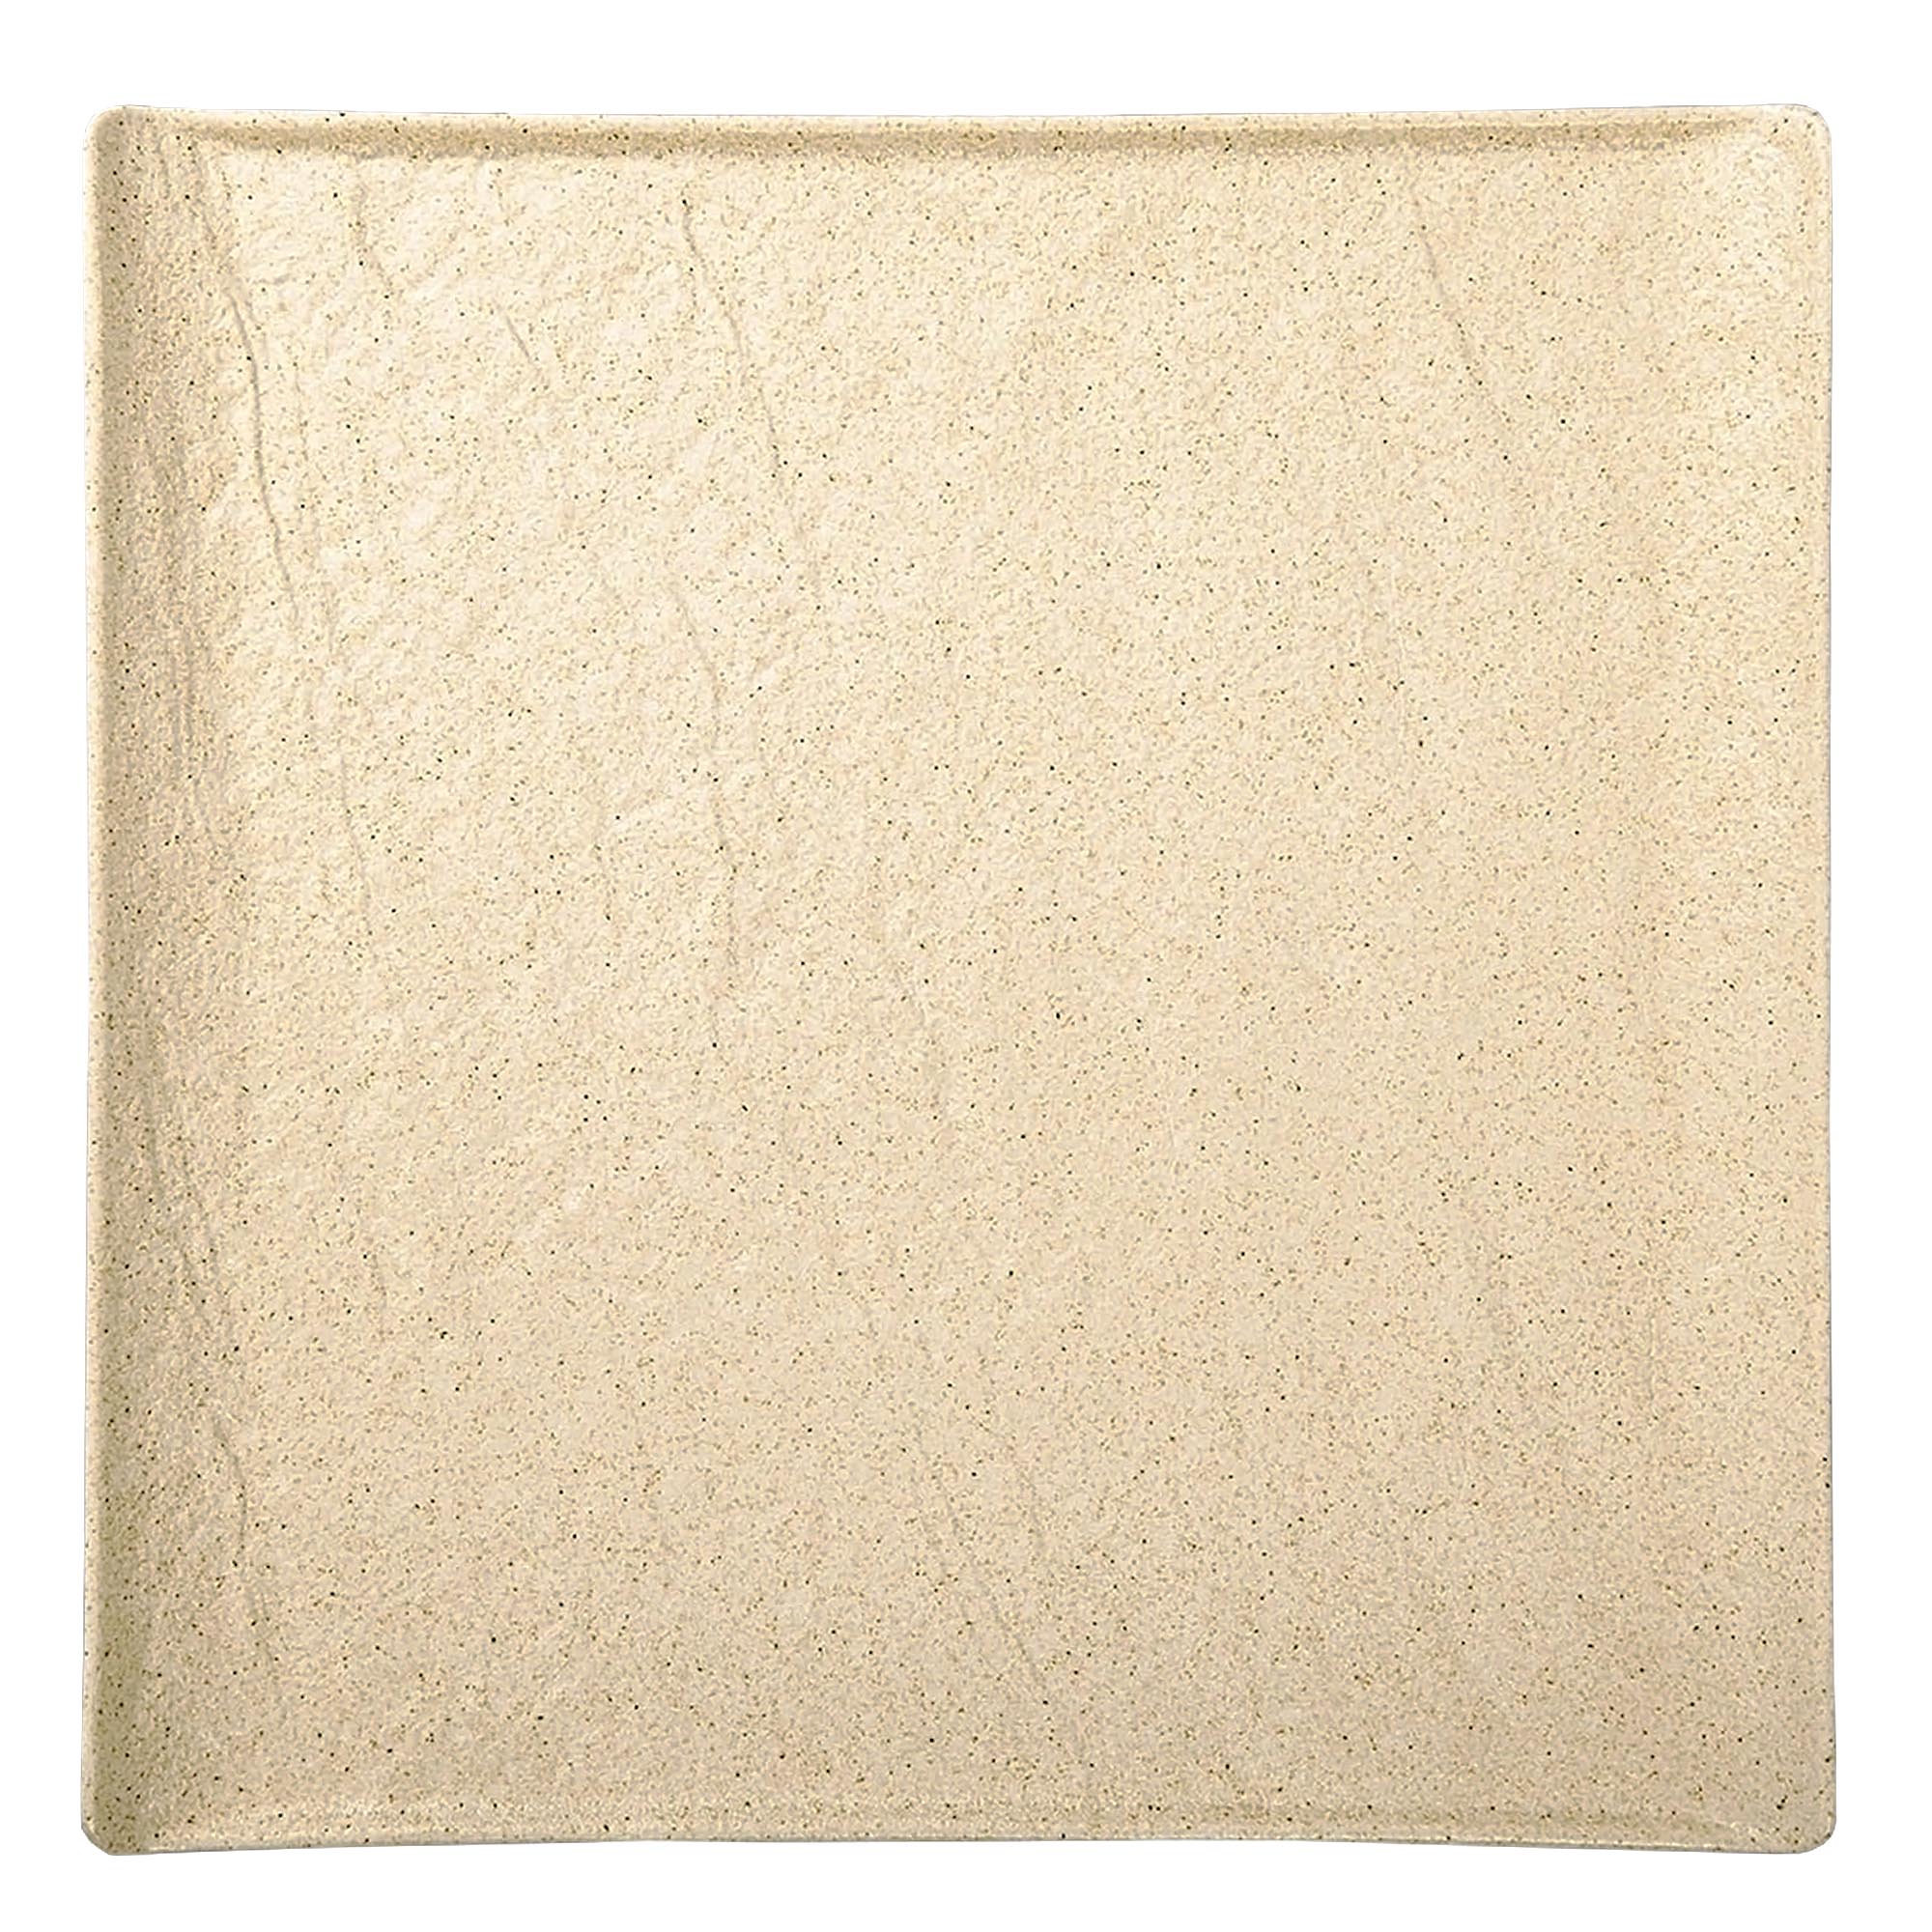 Тарелка квадратная Wilmax SandStone фарфор 27х27 см тарелка квадратная wilmax sandstone фарфор 17х17 см